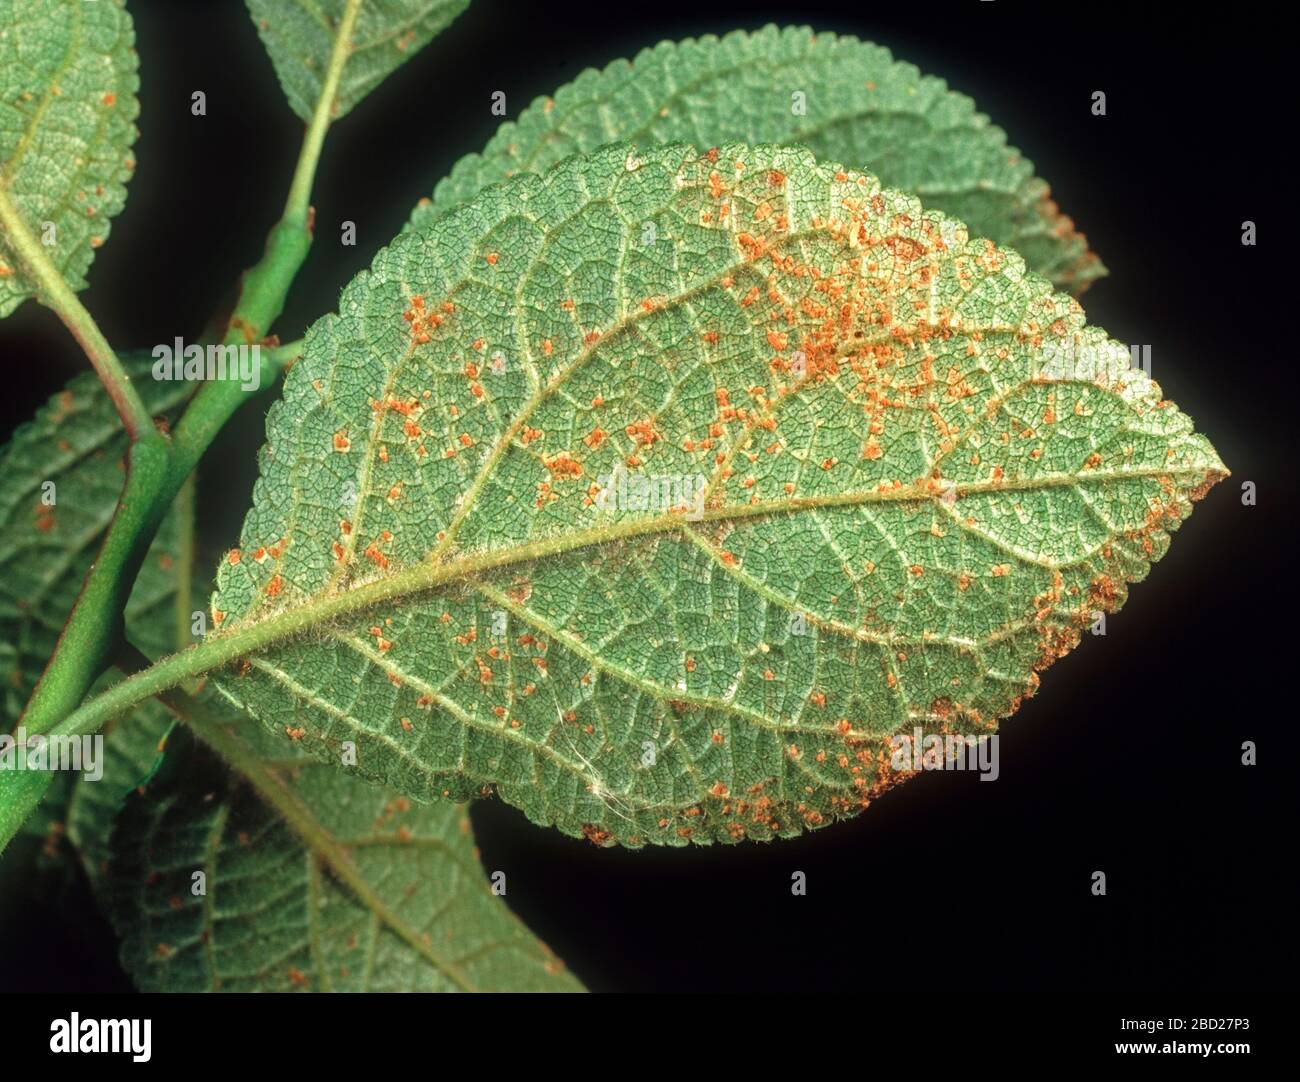 Plum rust (Tranzschelia discolor) fungal disease pustules on the underside of a plum (Prunus domestica) leaf Stock Photo